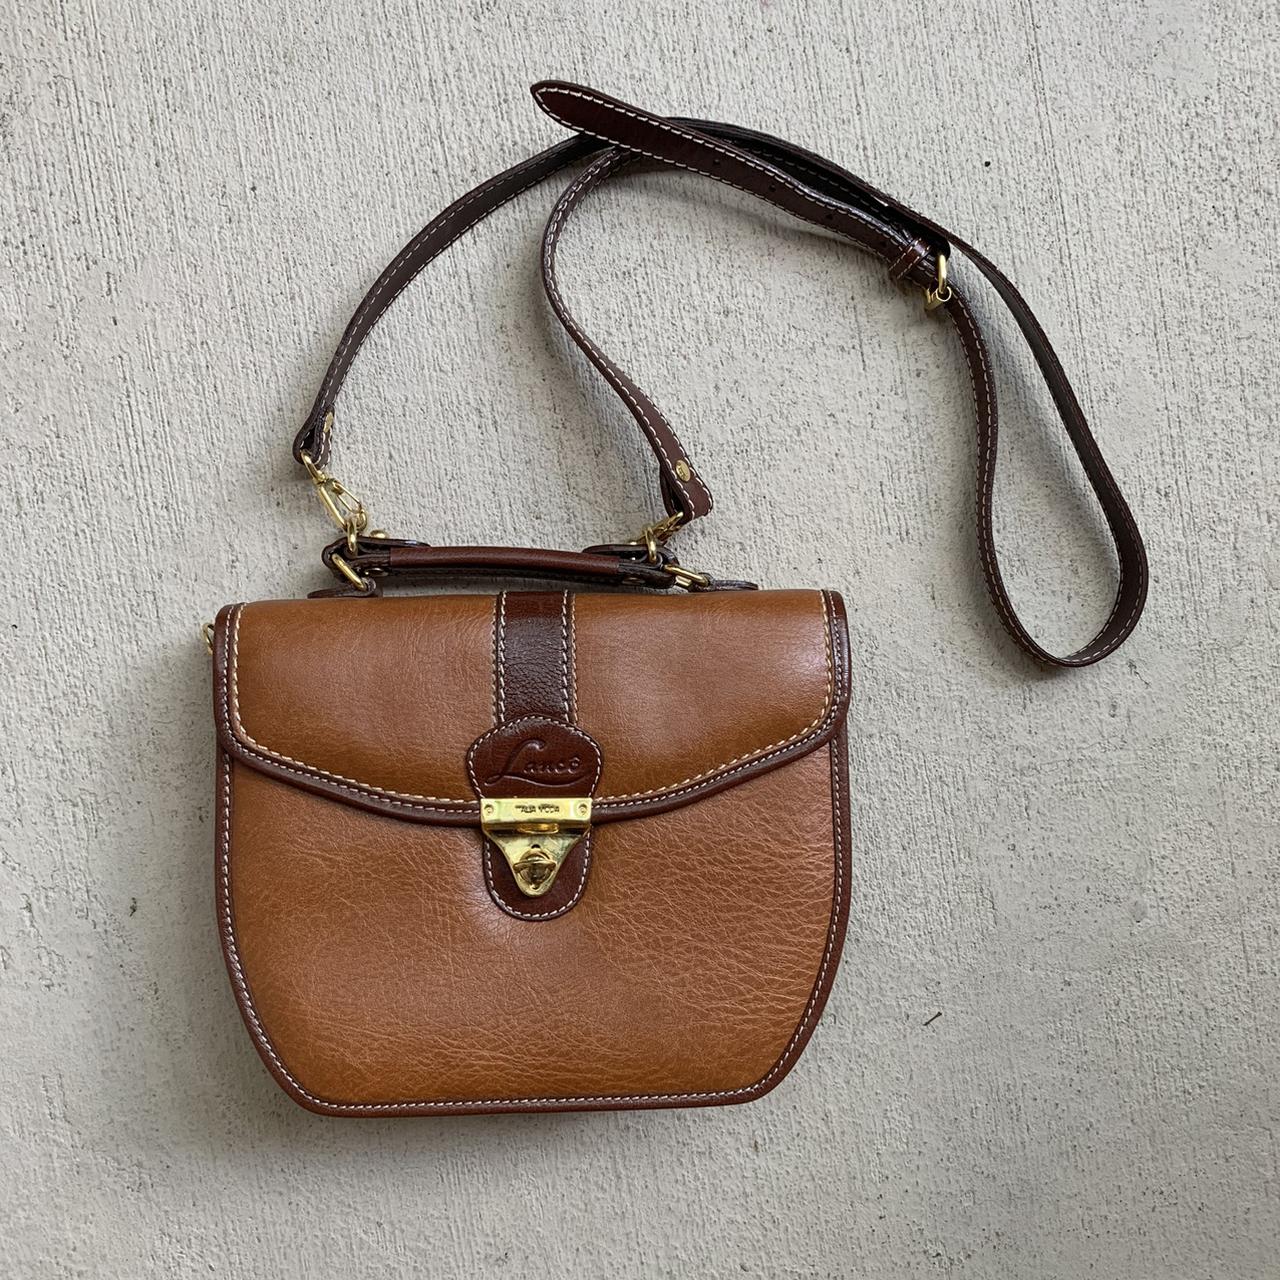 Rioni Moda Italia Signtature Brown Leather Shoulder Bag Purse (CON44) | eBay